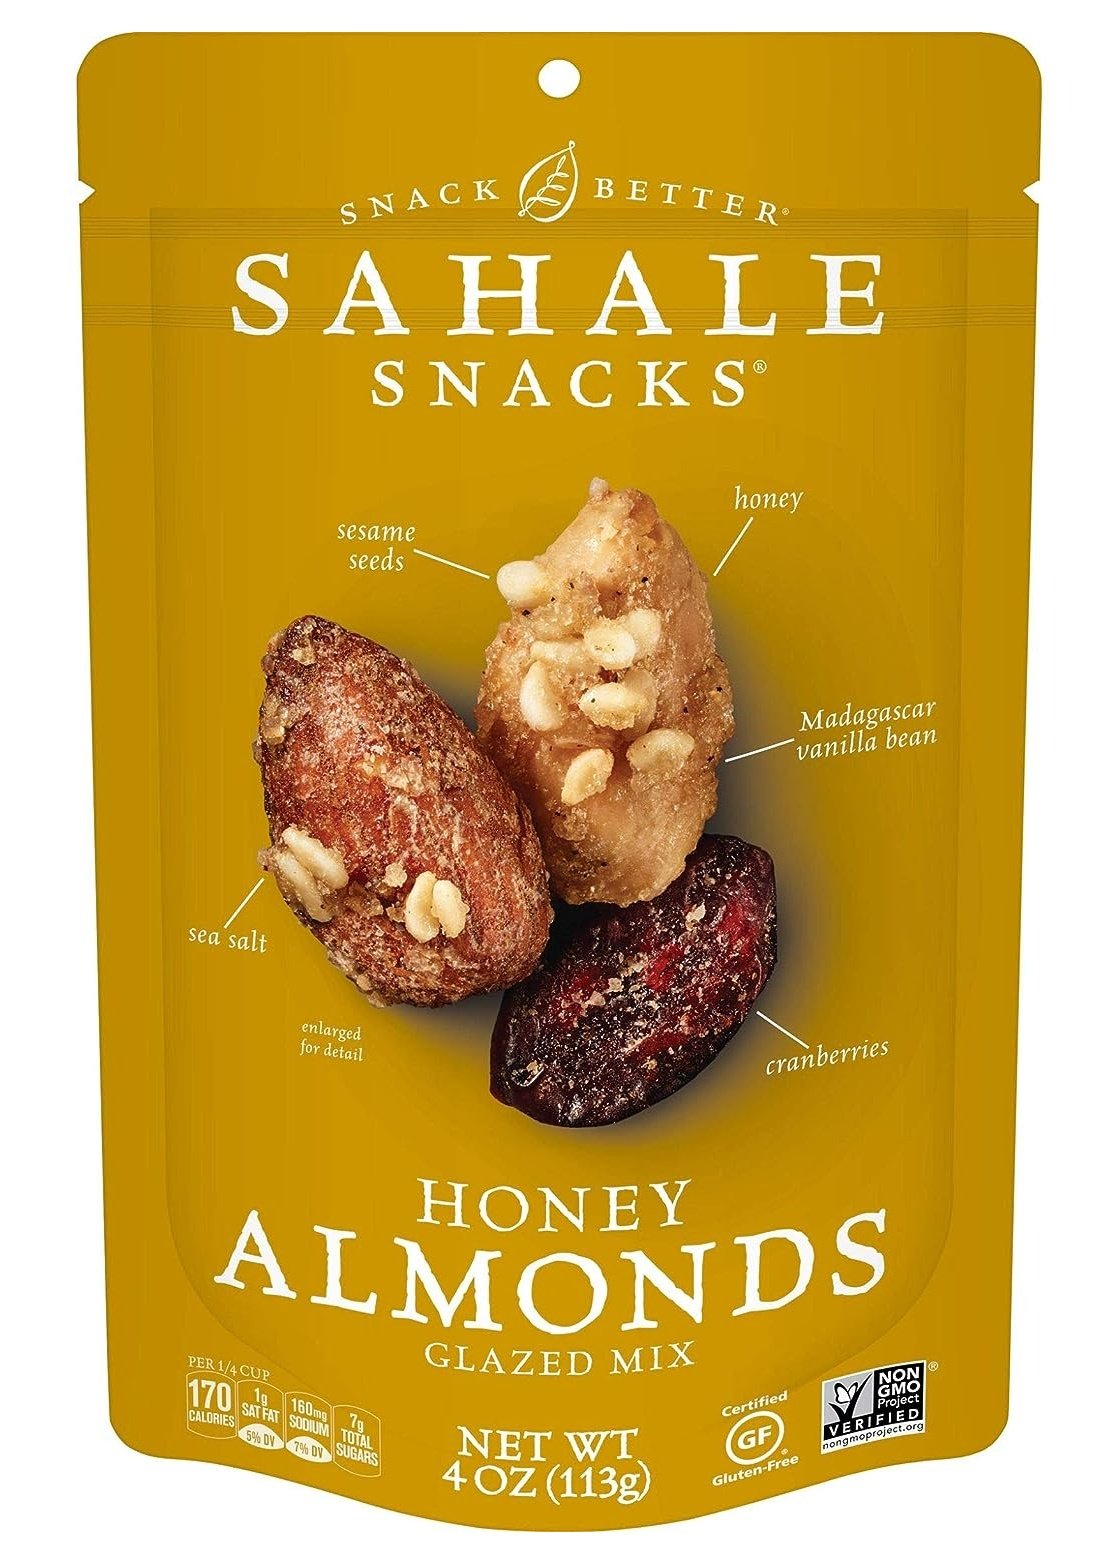 SAHALE SNACKS Honey Almonds Glazed Mix